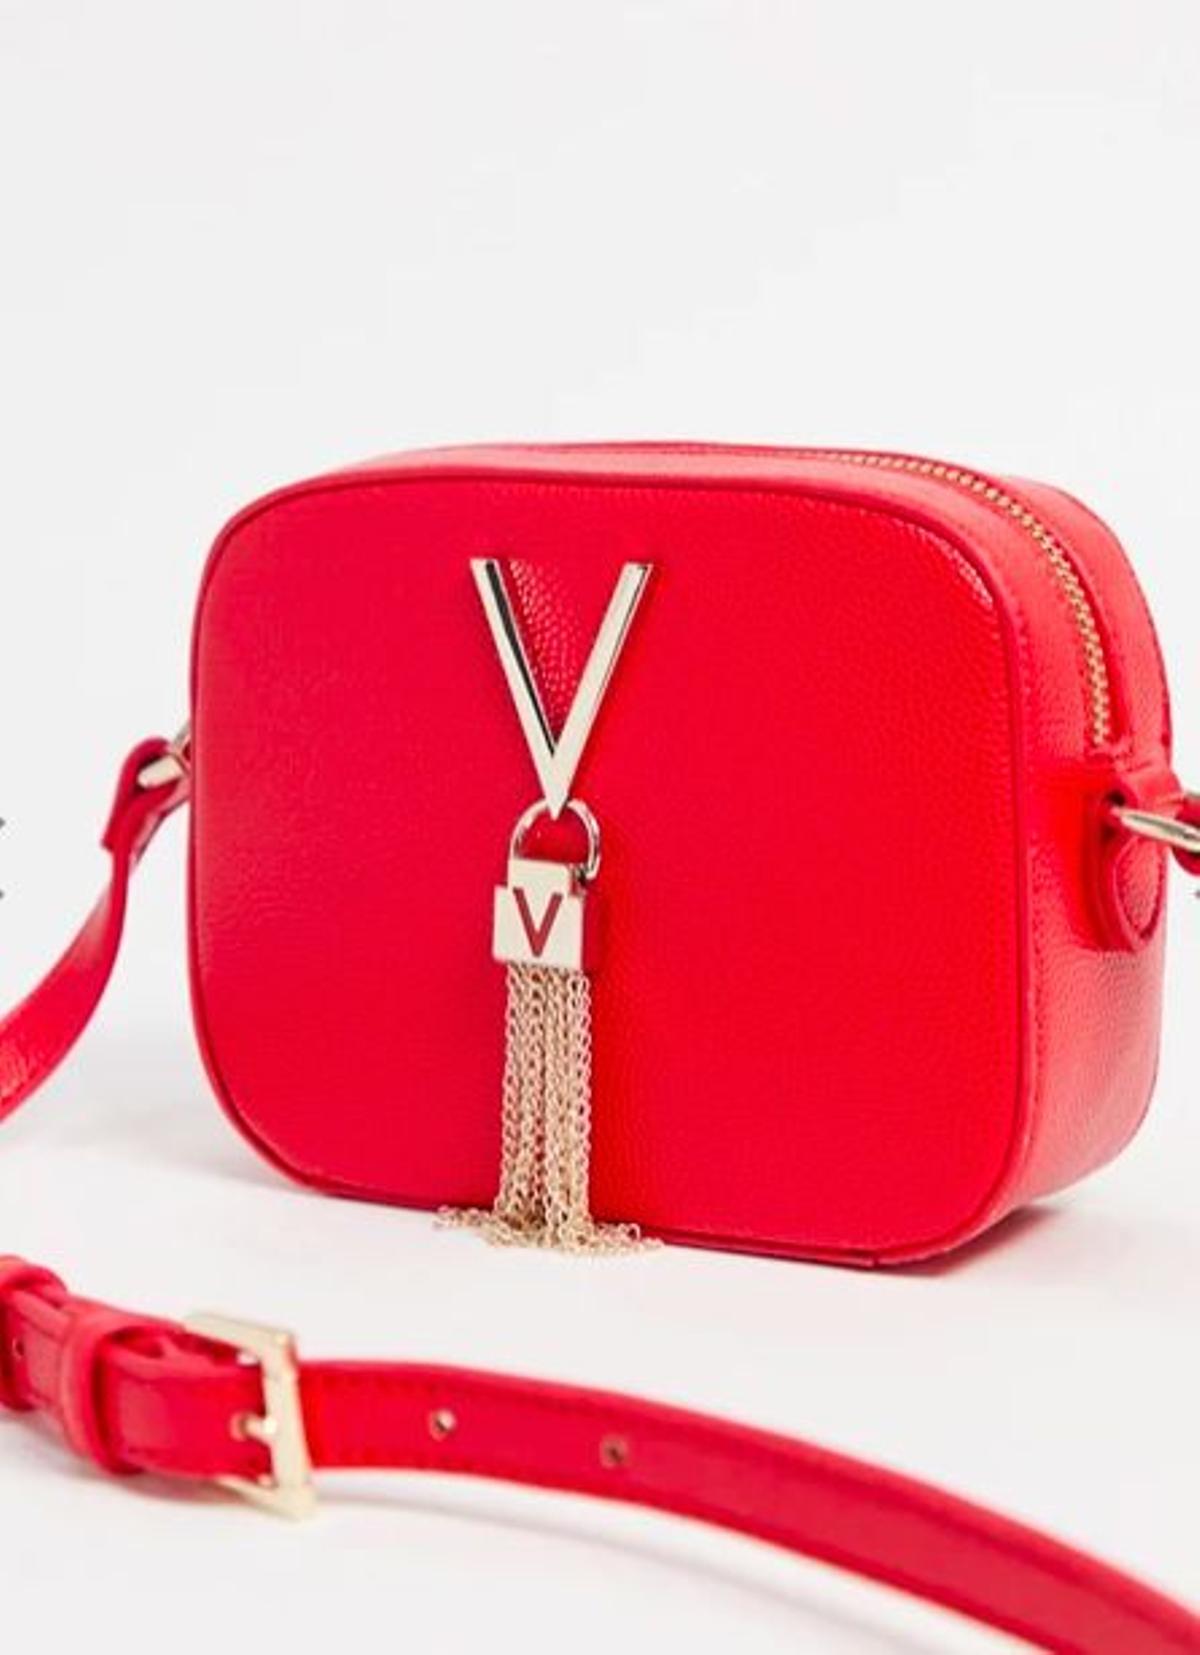 Bandolera estilo cámara con detalle de borla en rojo Divina de Valentino by Mario Valentino